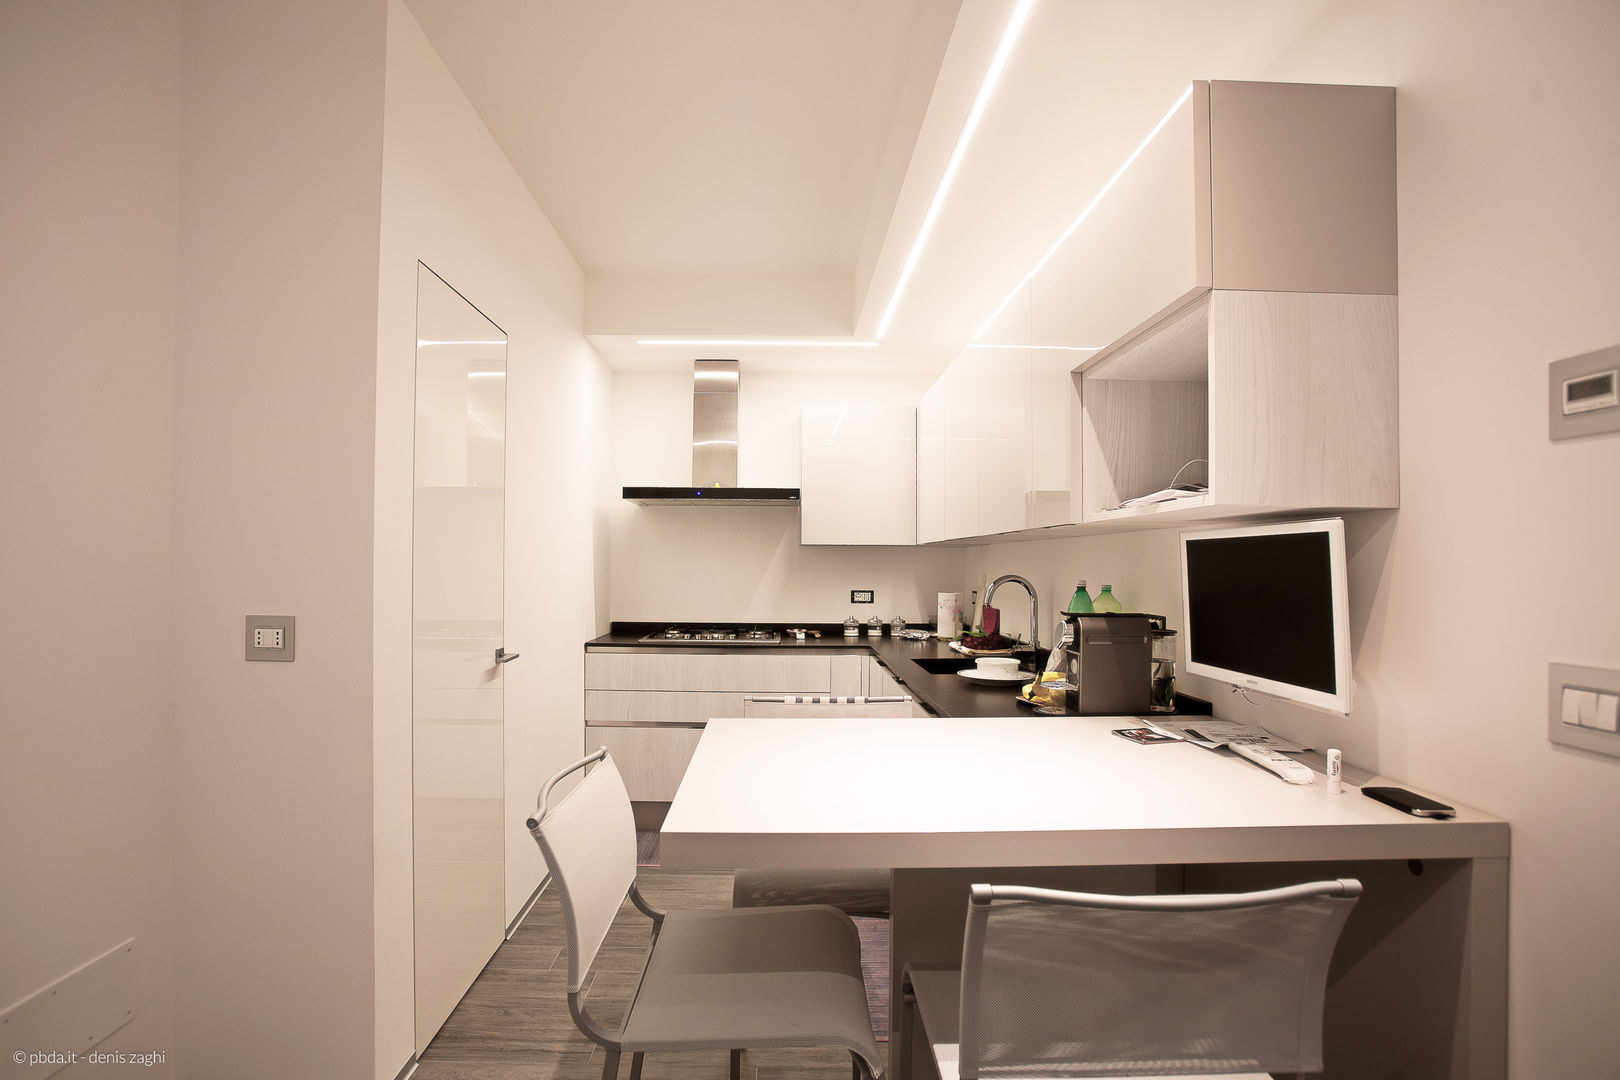 private house 13003, piccola bottega di architettura piccola bottega di architettura Modern kitchen